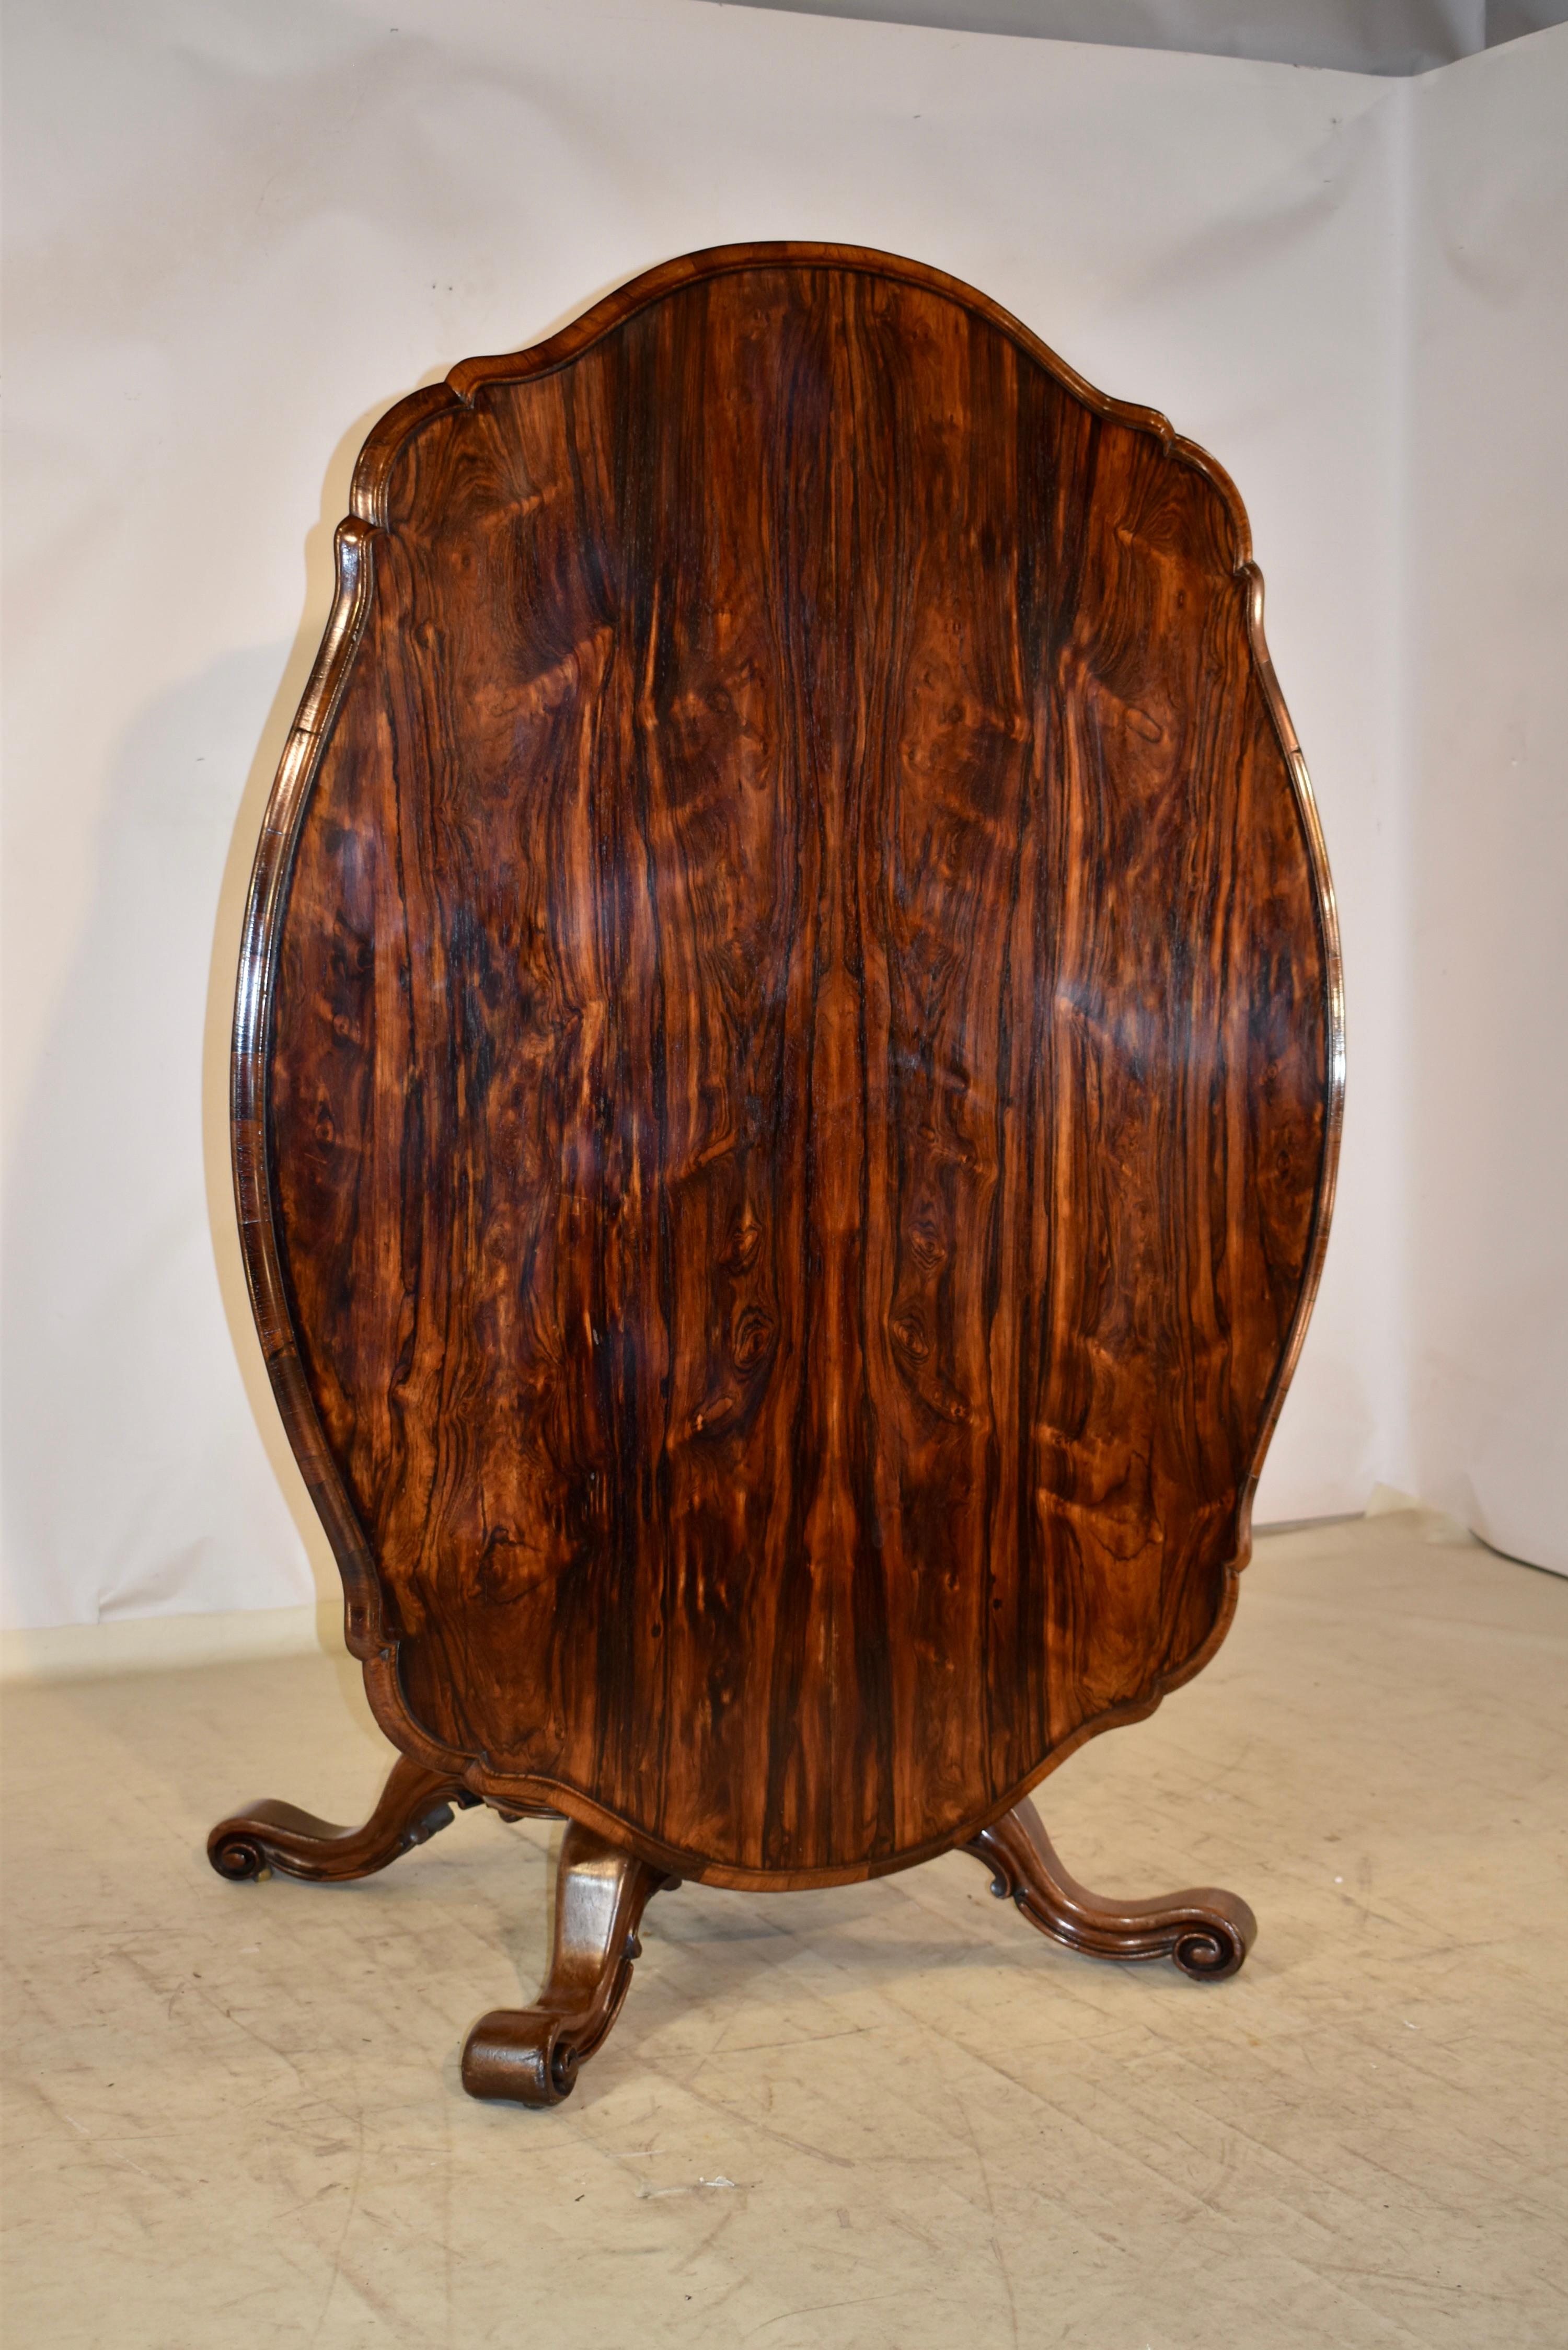 Table à plateau basculant du 19e siècle en Angleterre, en bois de rose.  Le haut est absolument magnifique !  Elle possède un bord façonné et biseauté autour de la table, qui entoure une table en palissandre au grain magnifique.  le sommet repose